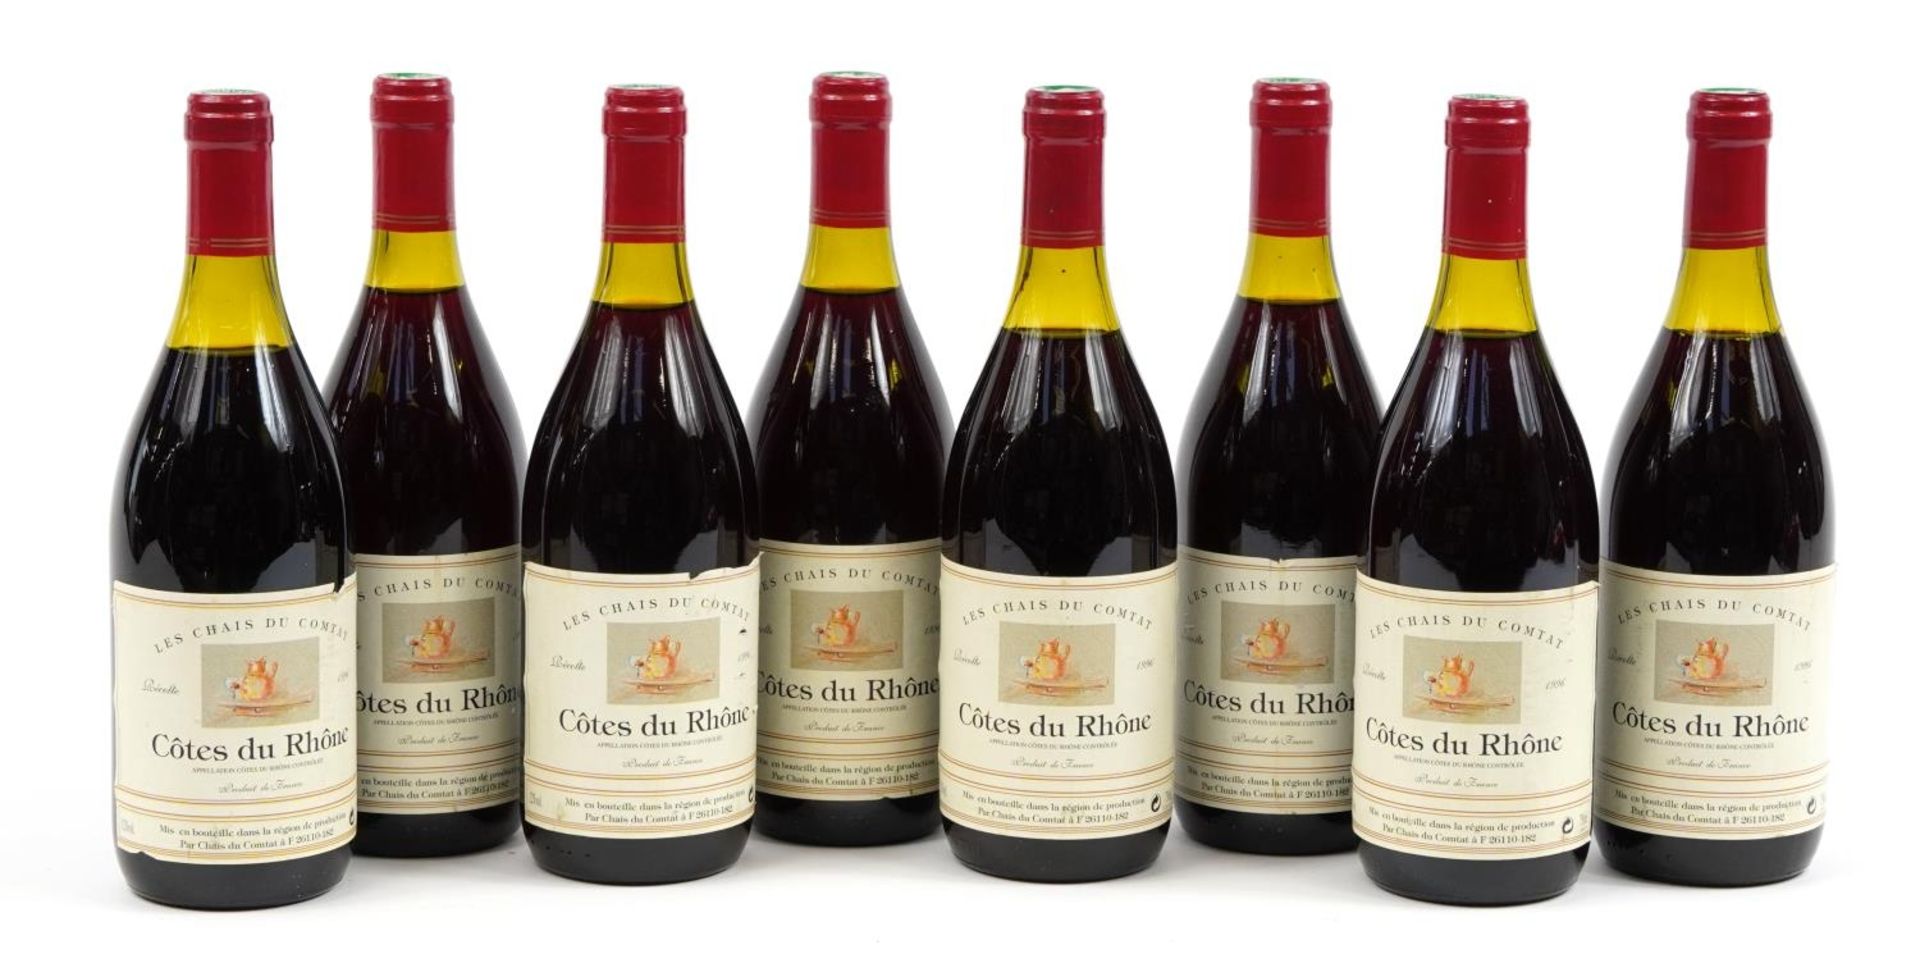 Eight bottles of 1996 Les Chais du Comtat Cote du Rhone red wine